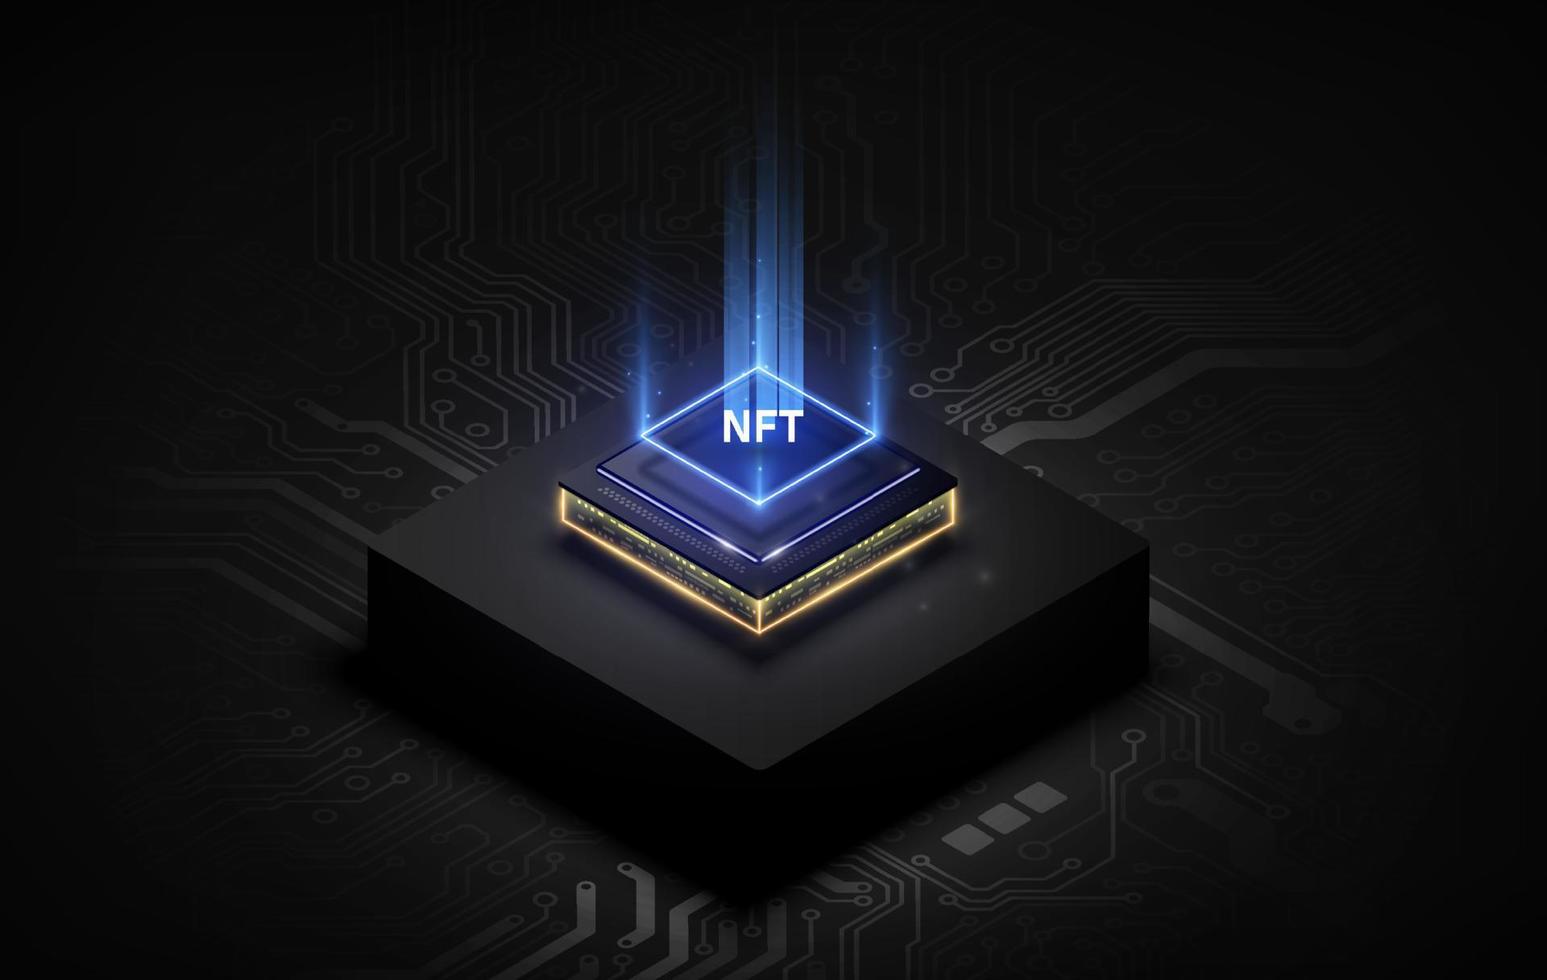 texto token nft no chip cpu com fundo de placa de circuito digital. conceito de nft torna-se mais popular e bem conhecido. produto da tecnologia de moeda criptográfica vetor